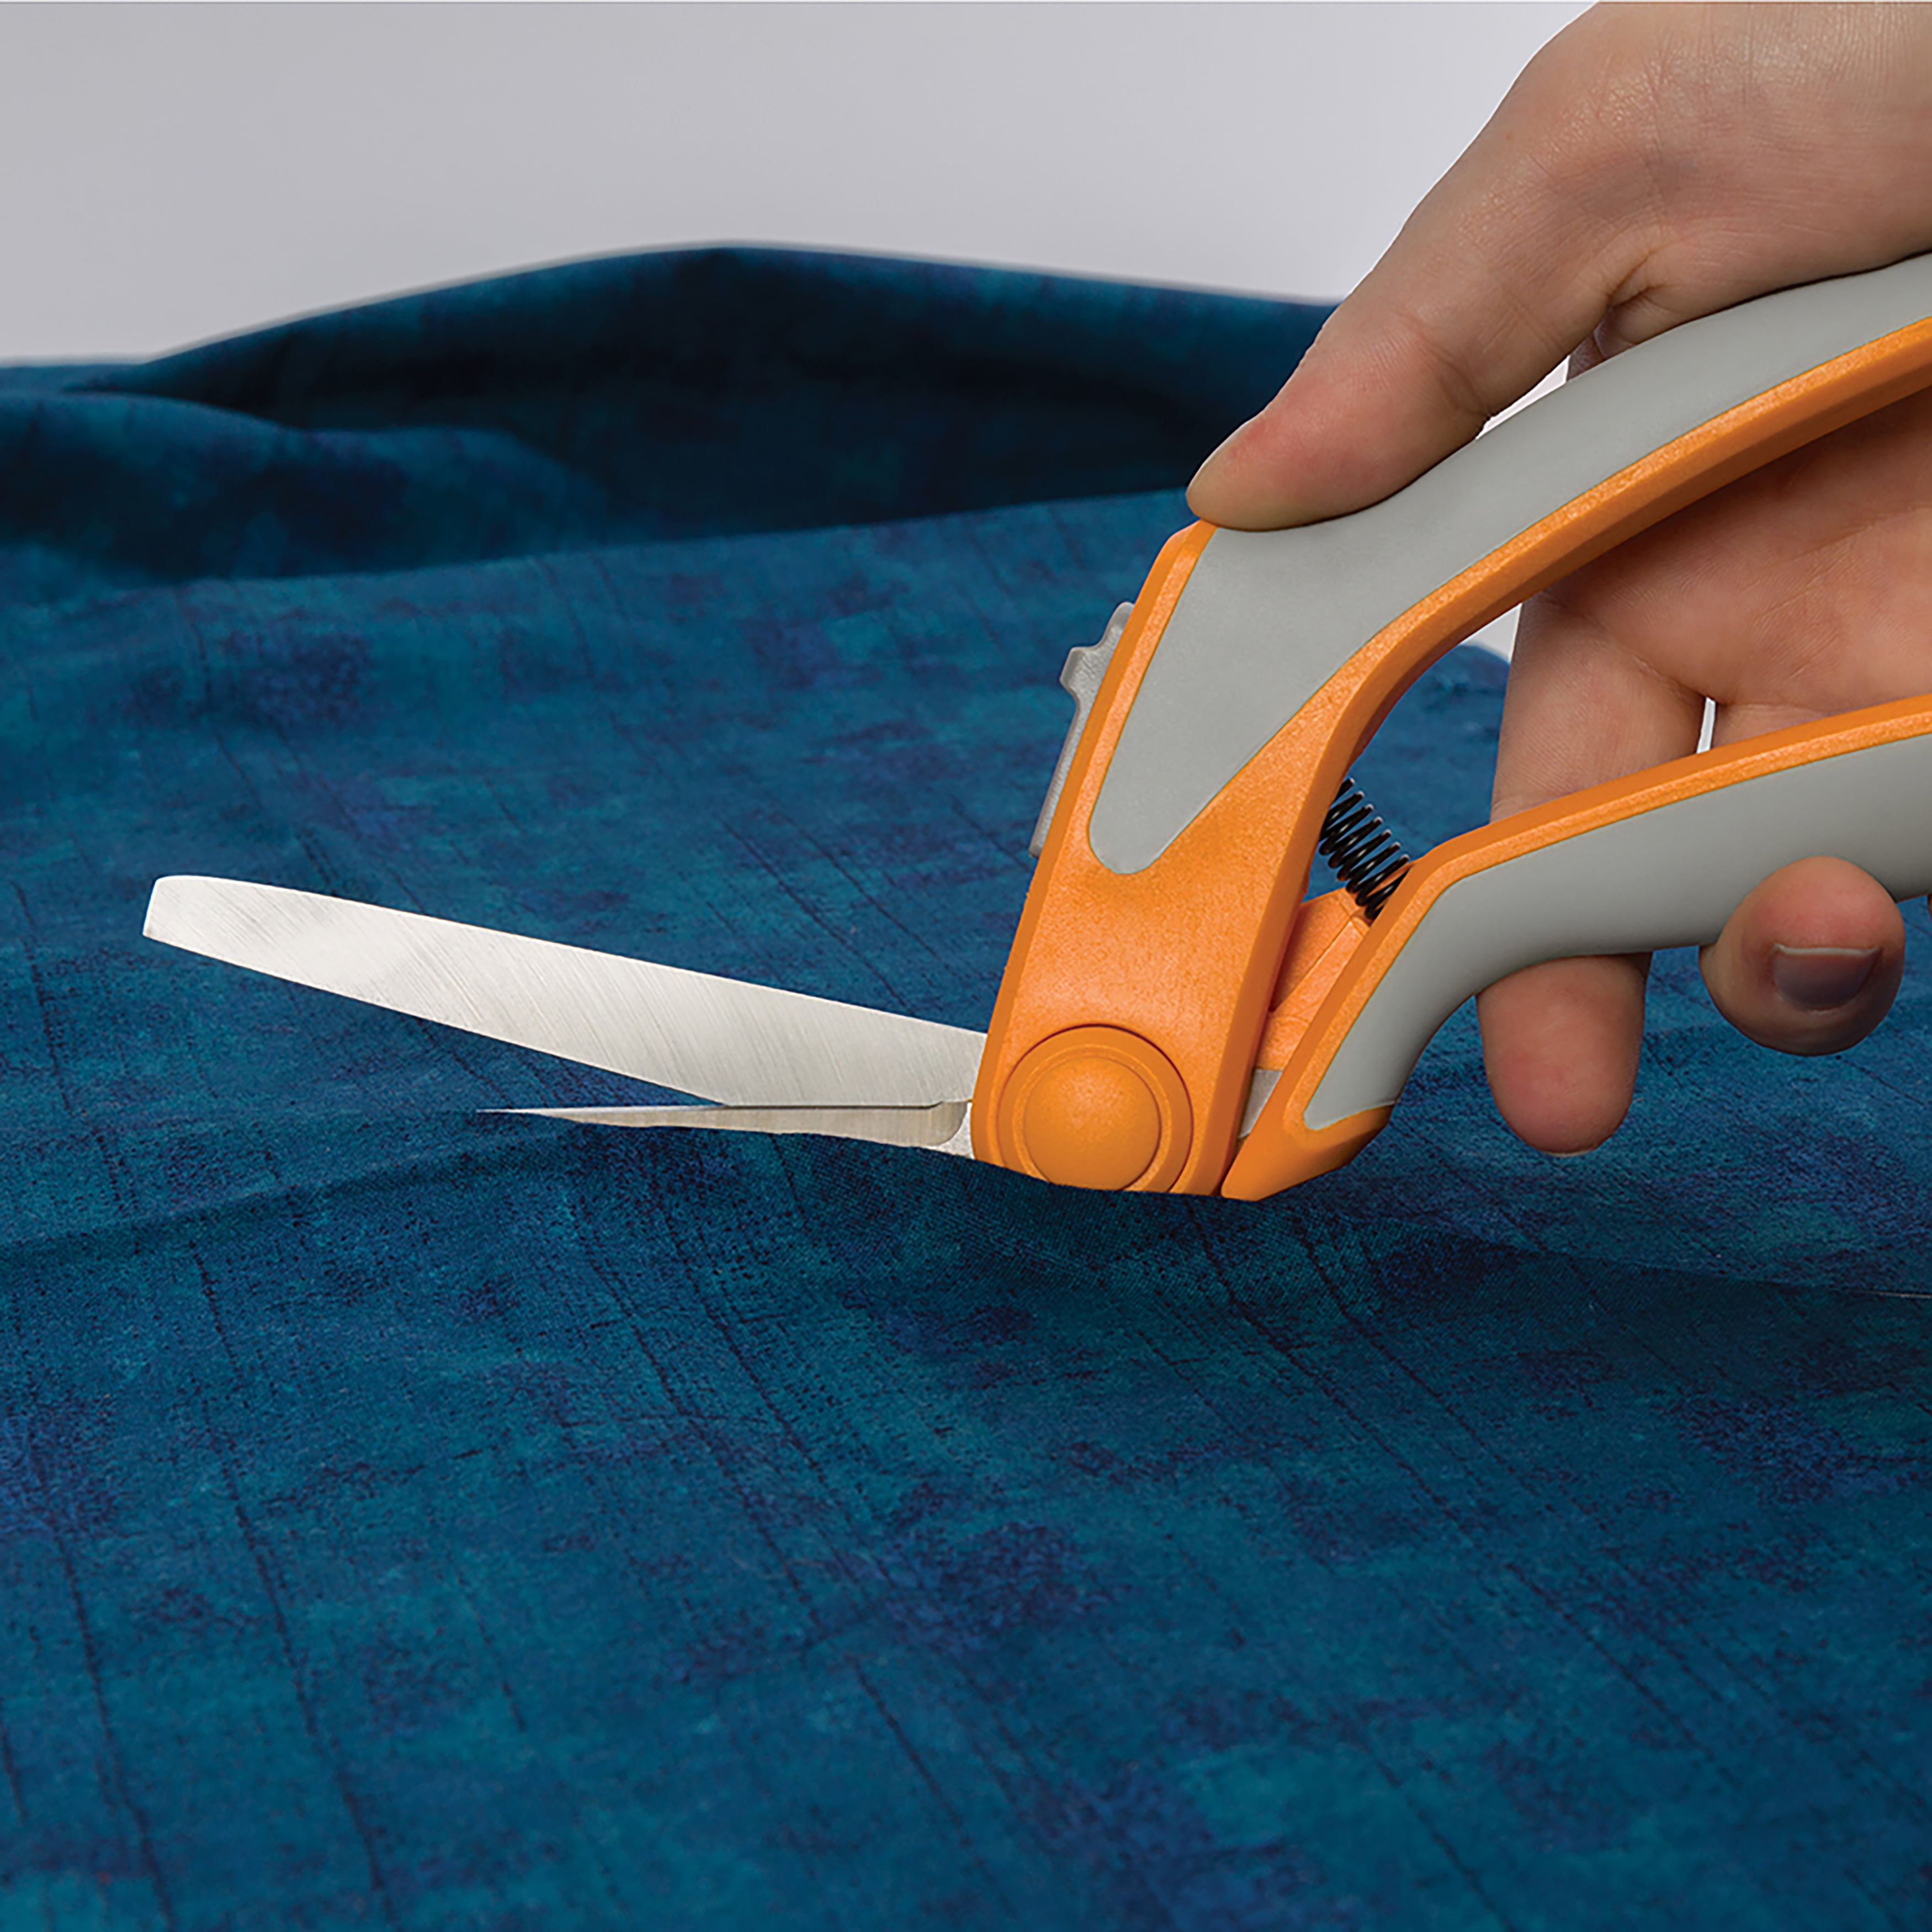 Fiskars Razor Sharp Sewing Shears - 9 - Scissors - Cutting